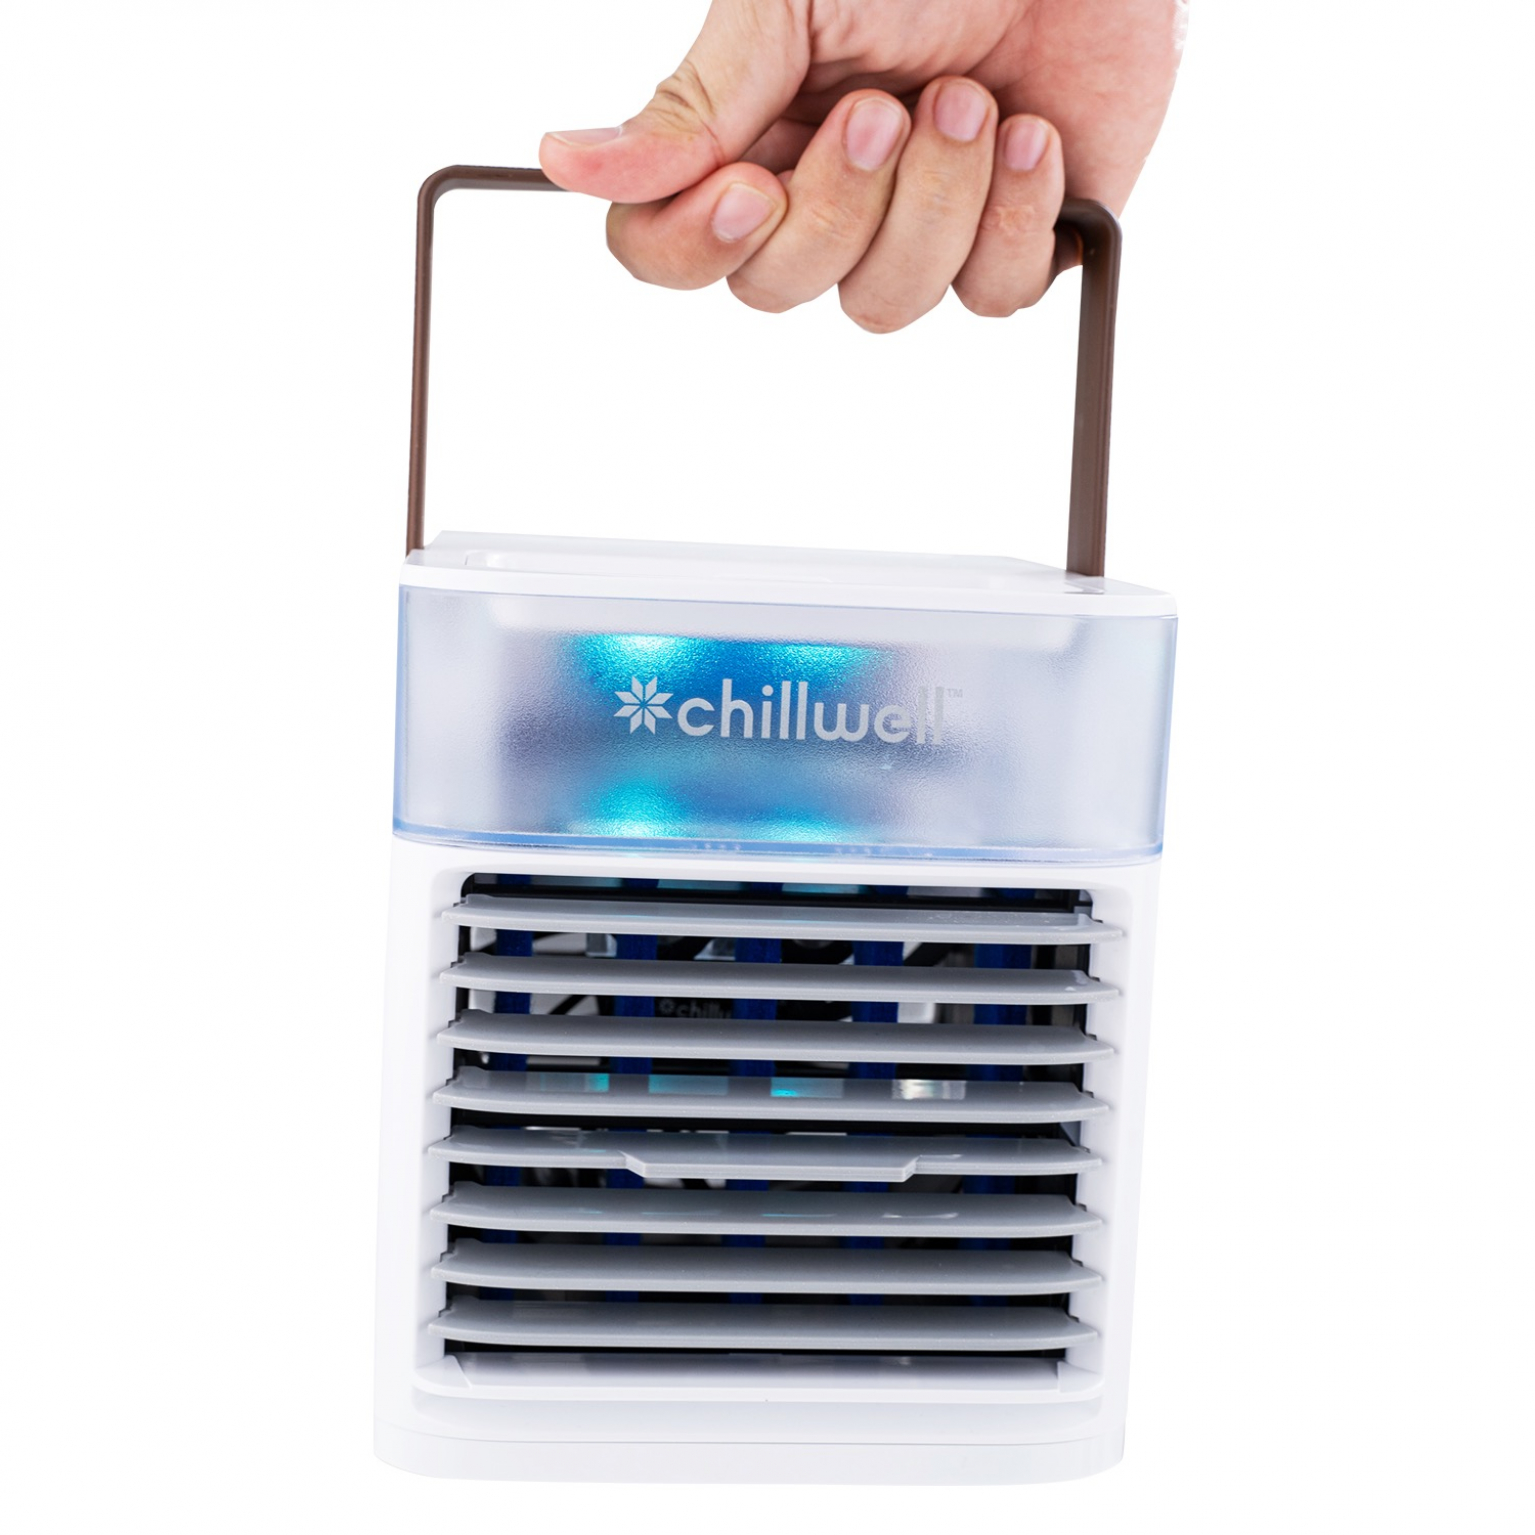 Chillwell Ac Portable Mini Air Conditioner